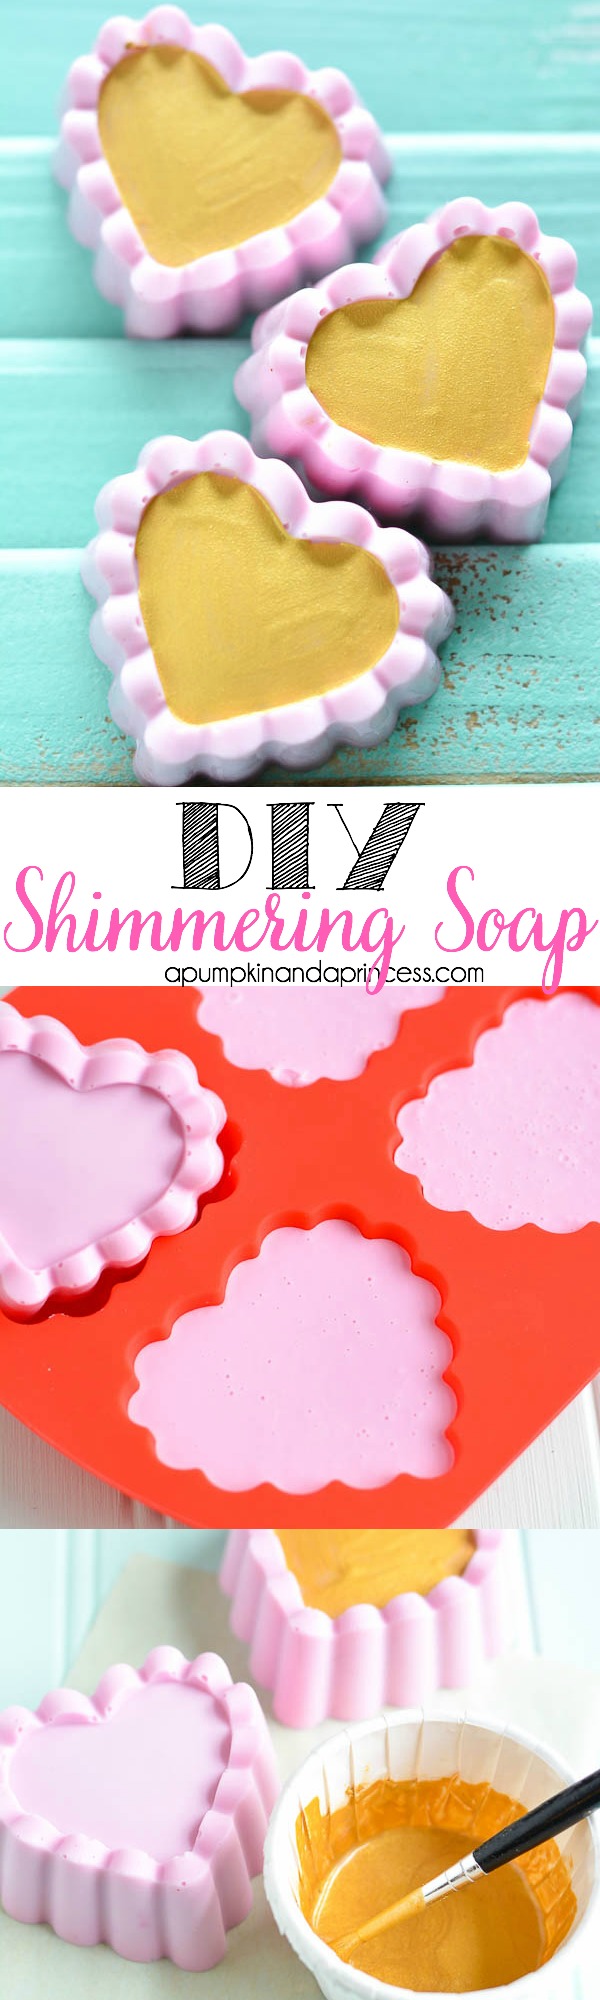 DIY Shimmer Soap Tutorial